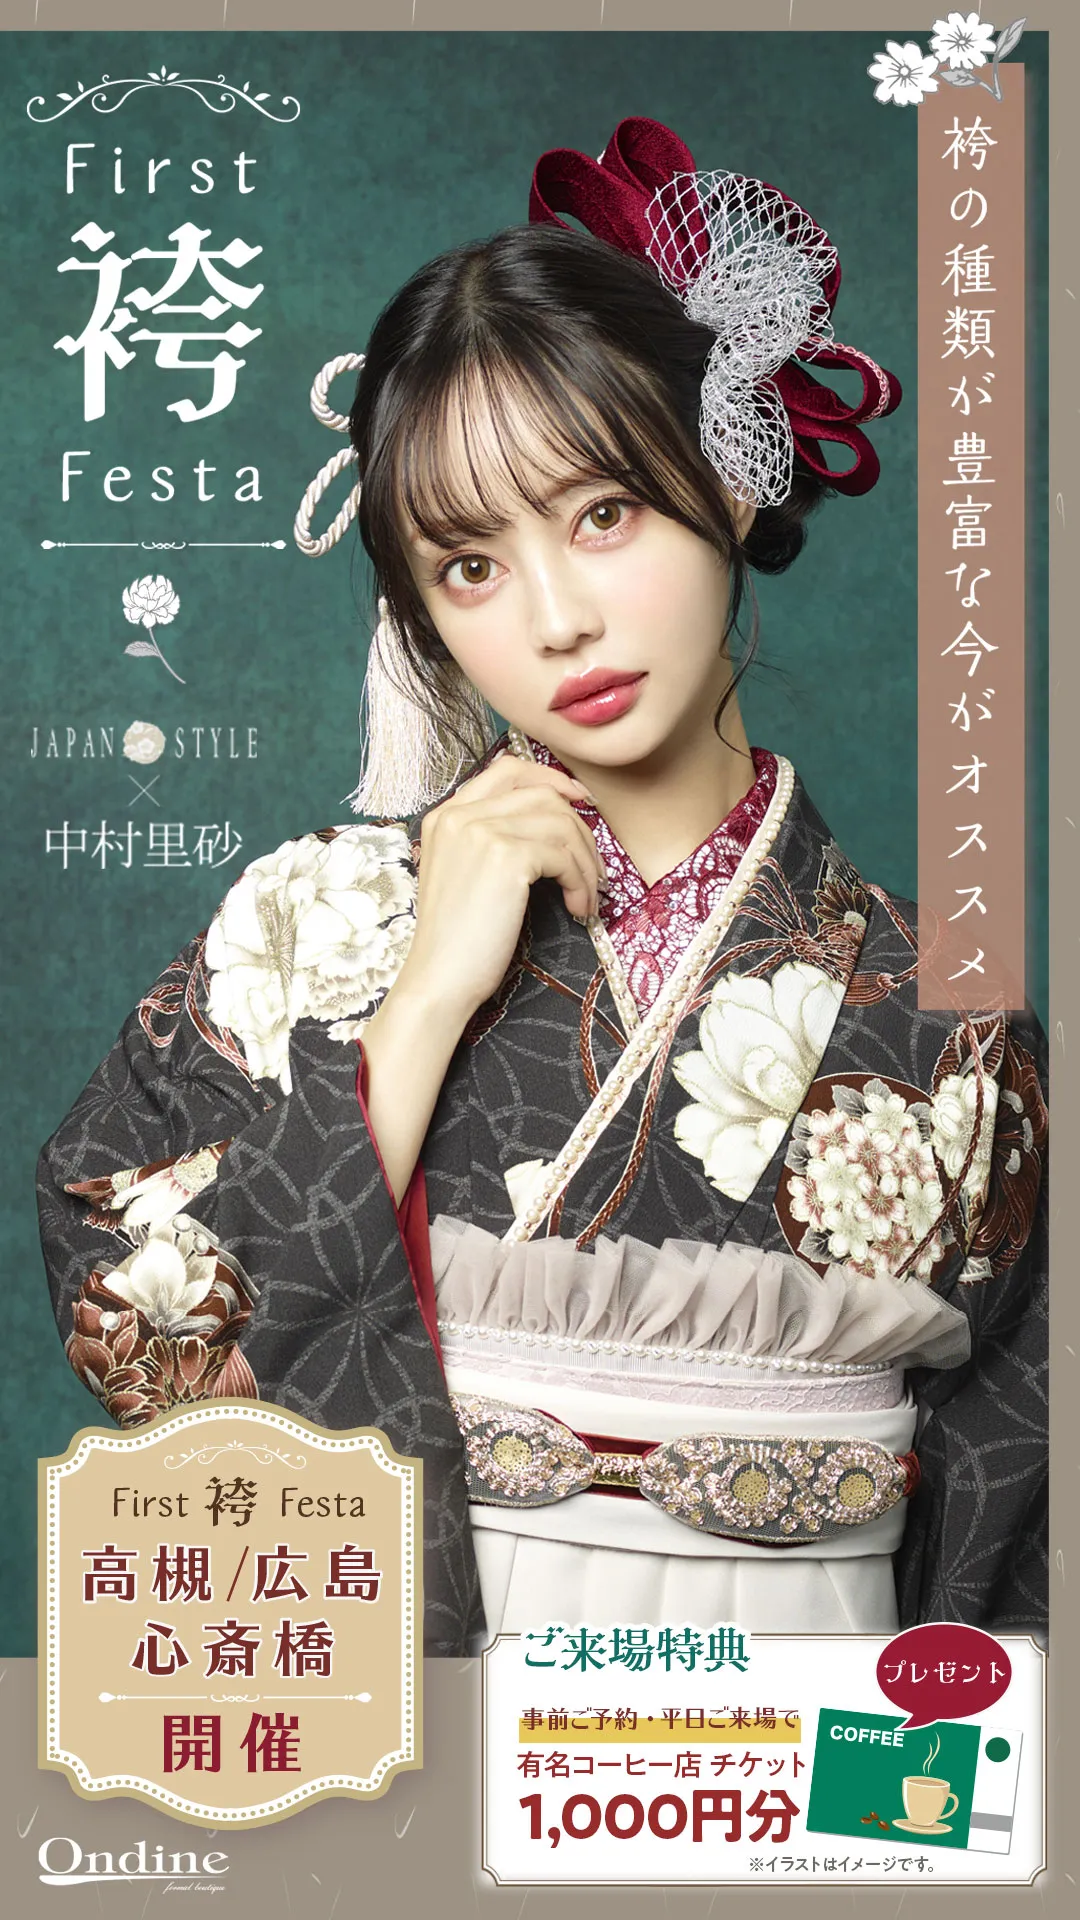 First袴Festa